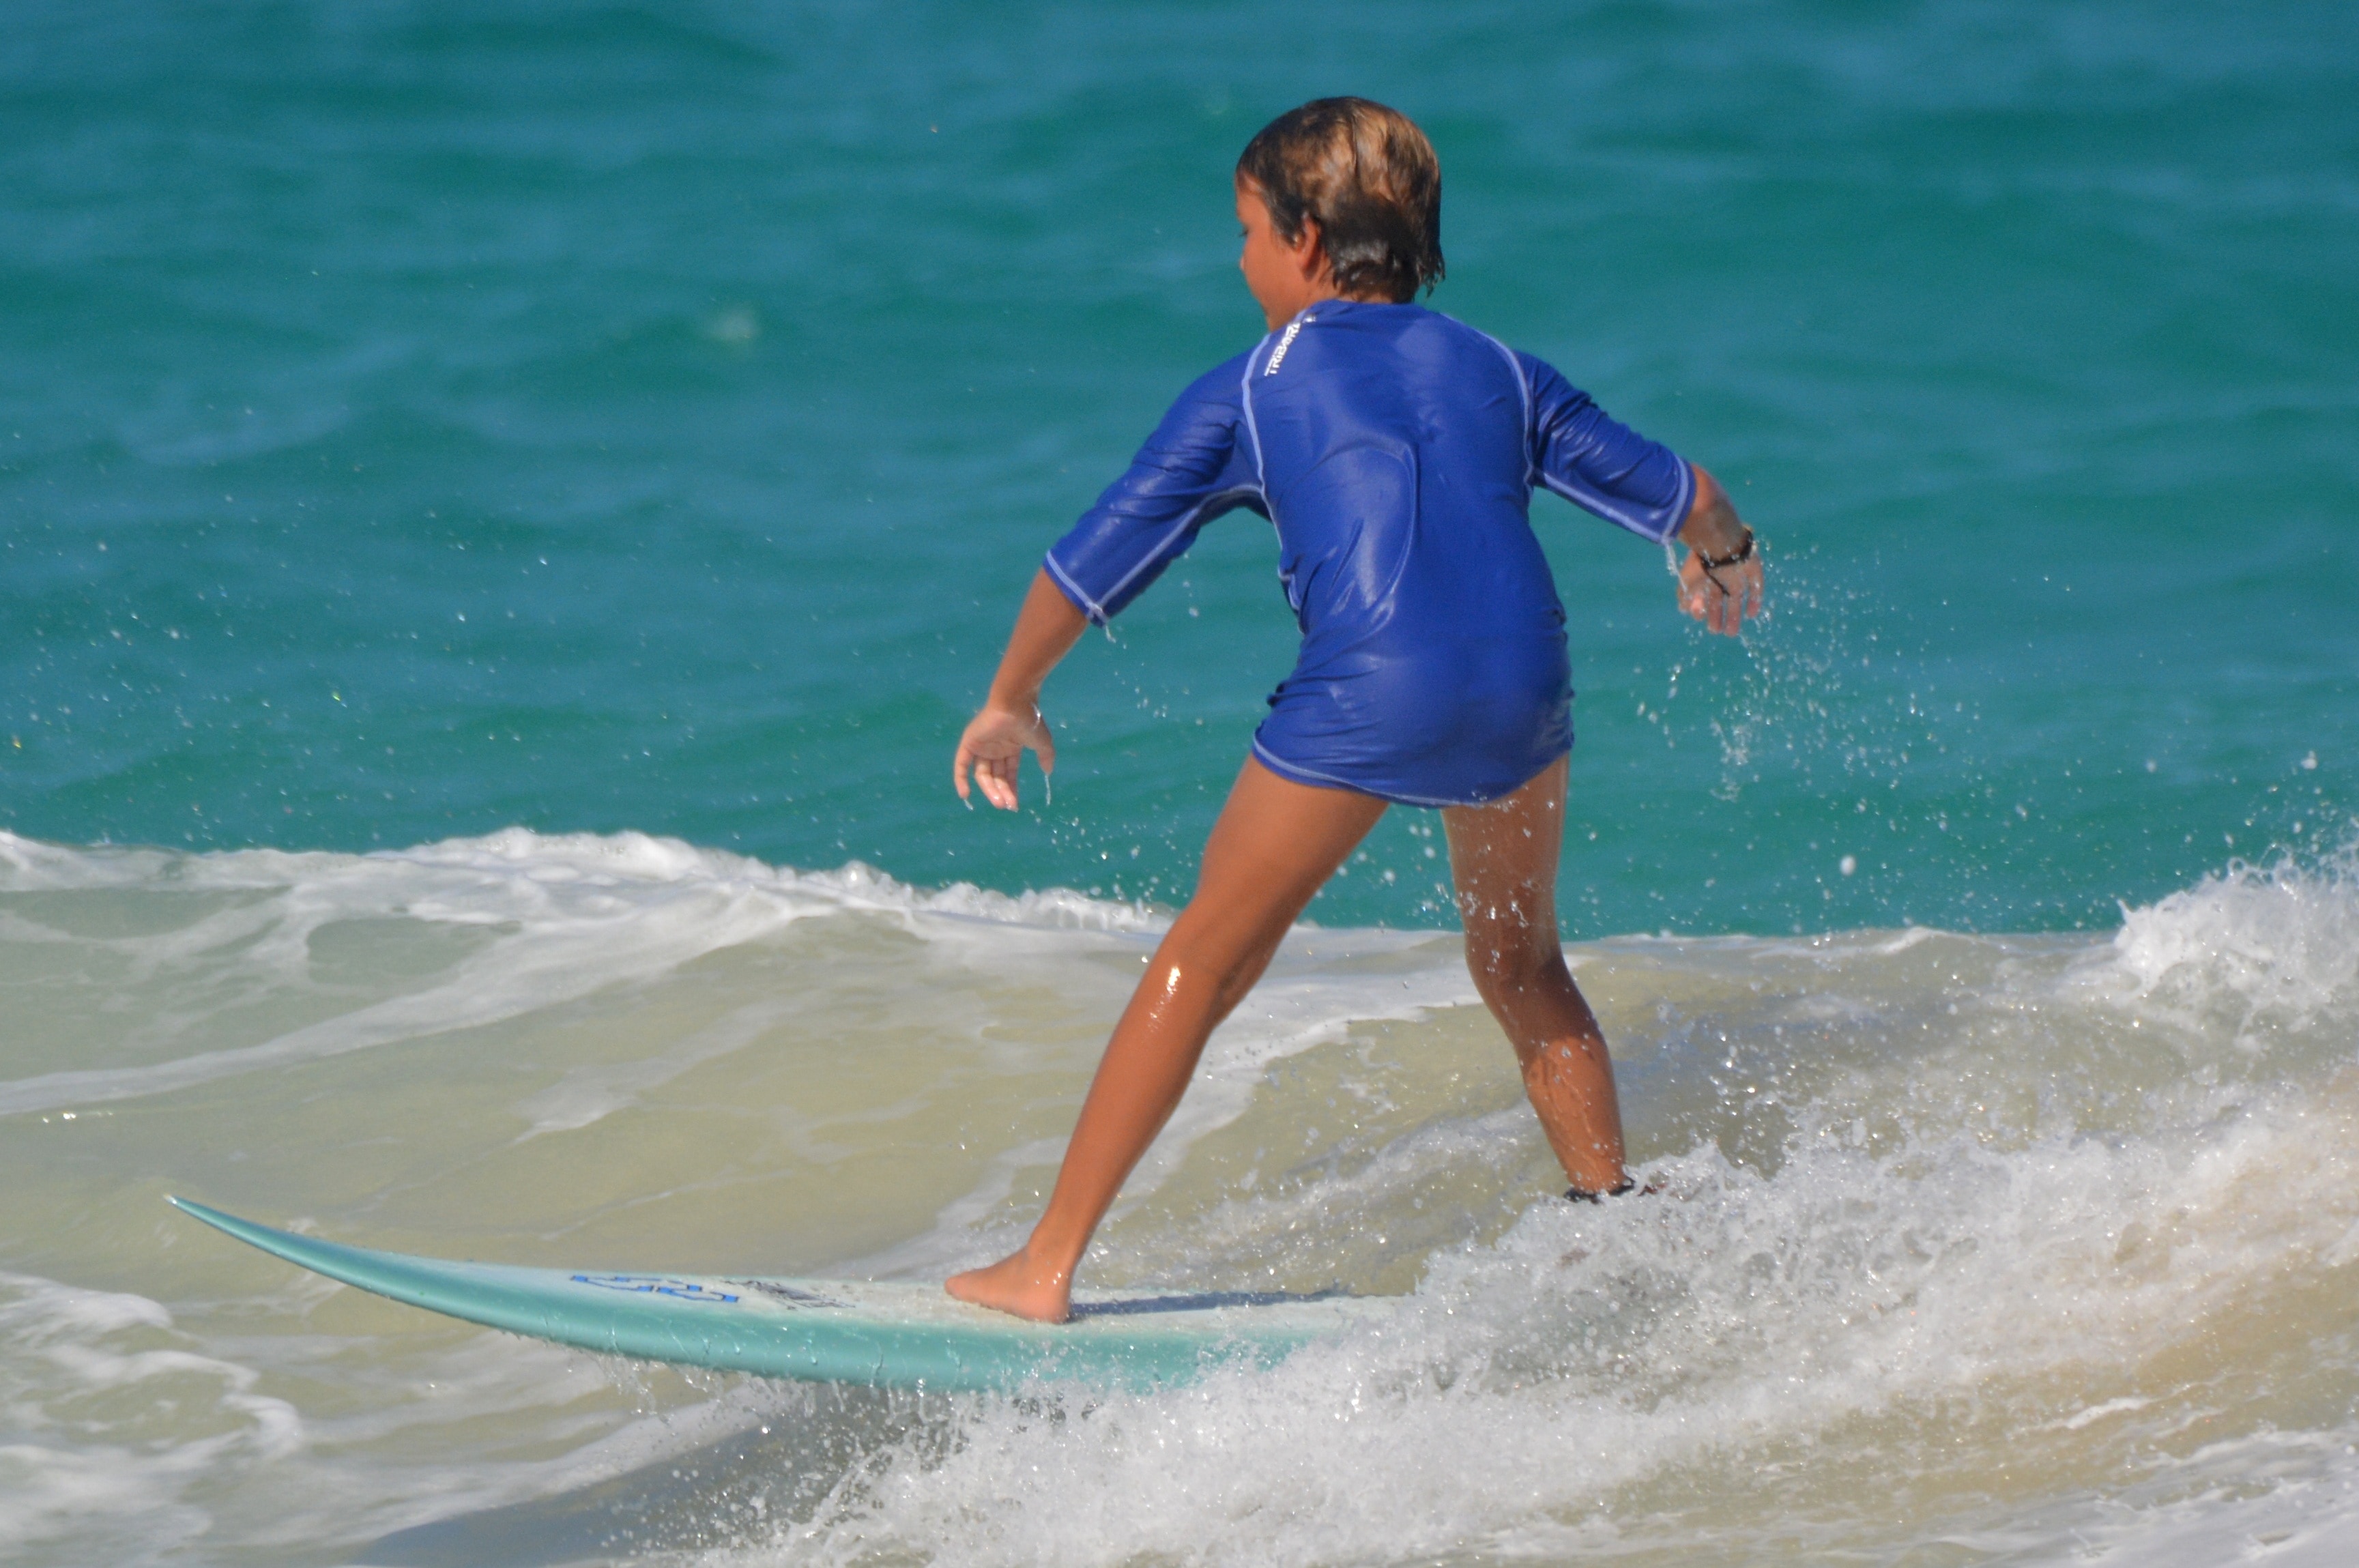 boy in blue surfing on blue sea